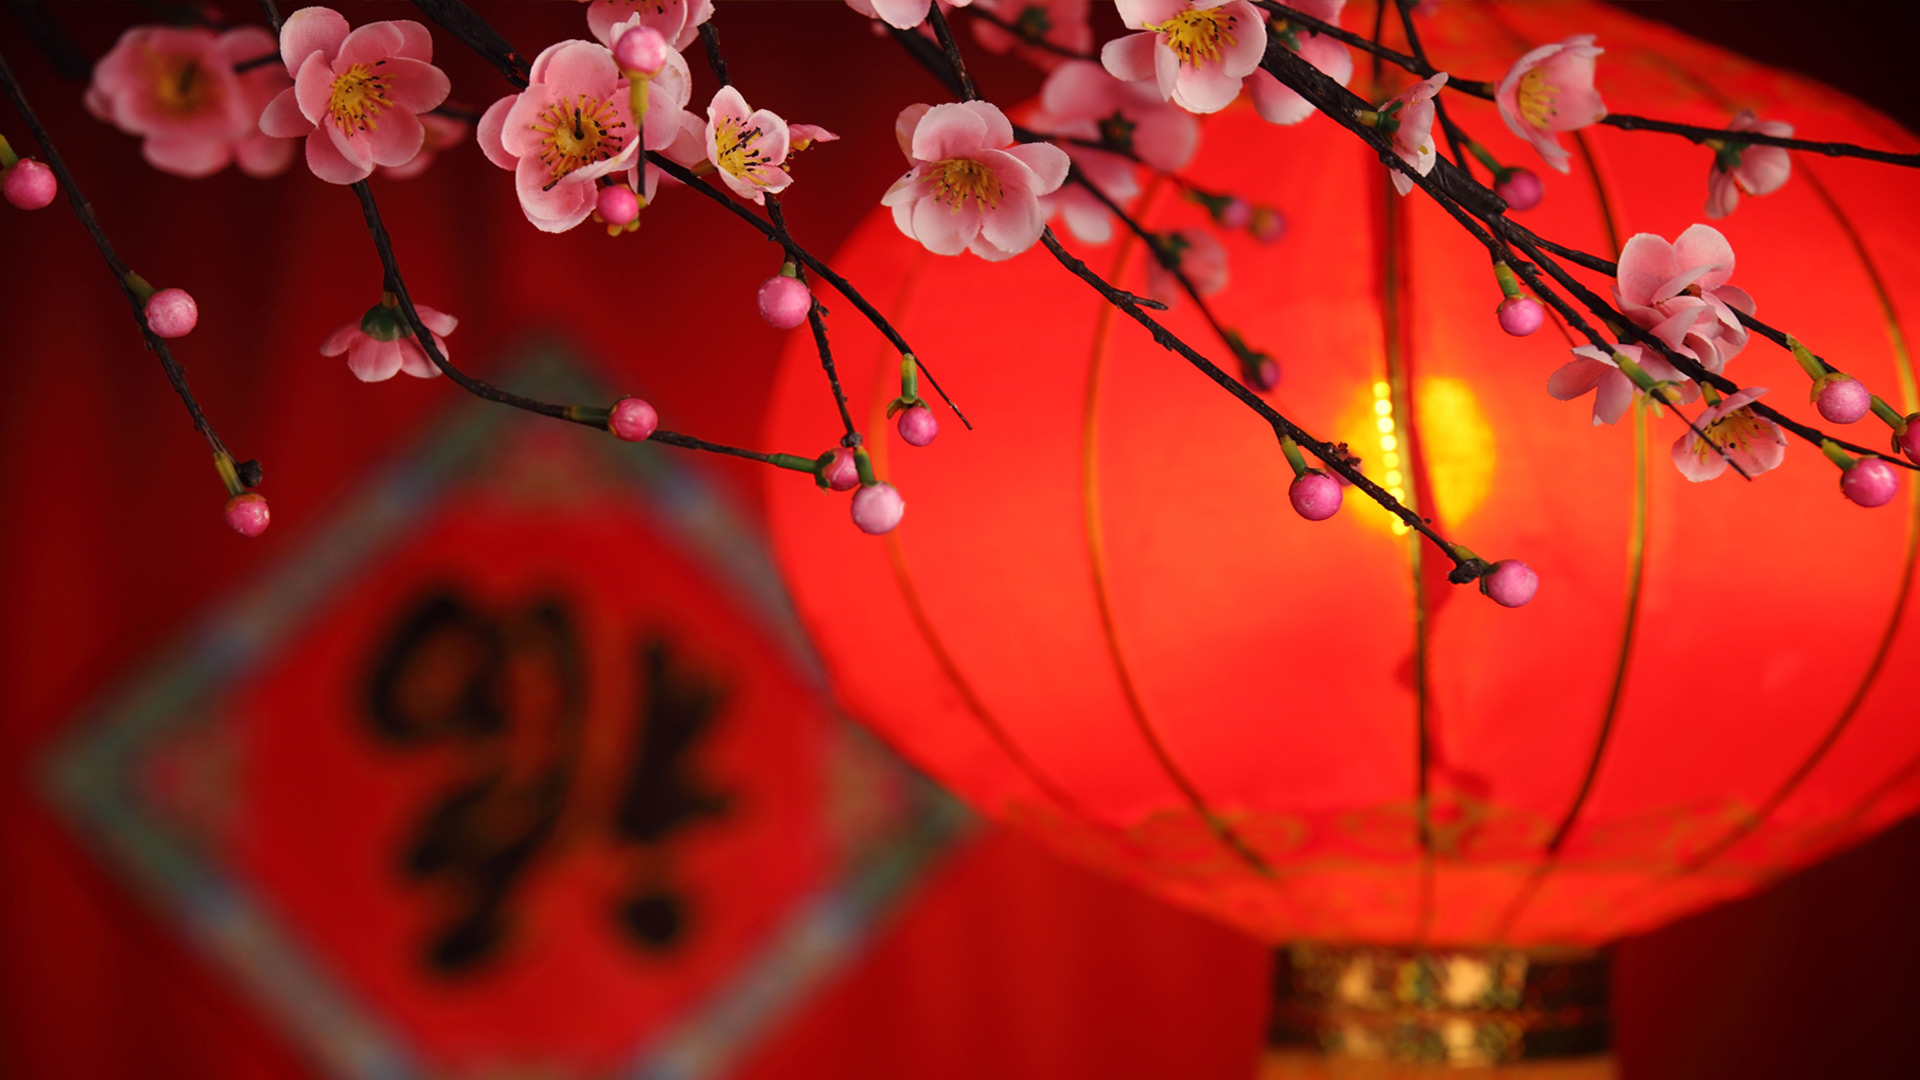 عکس پروفایل قرمز رنگ چینی از فانوس در کنار شکوفه های بهاری 